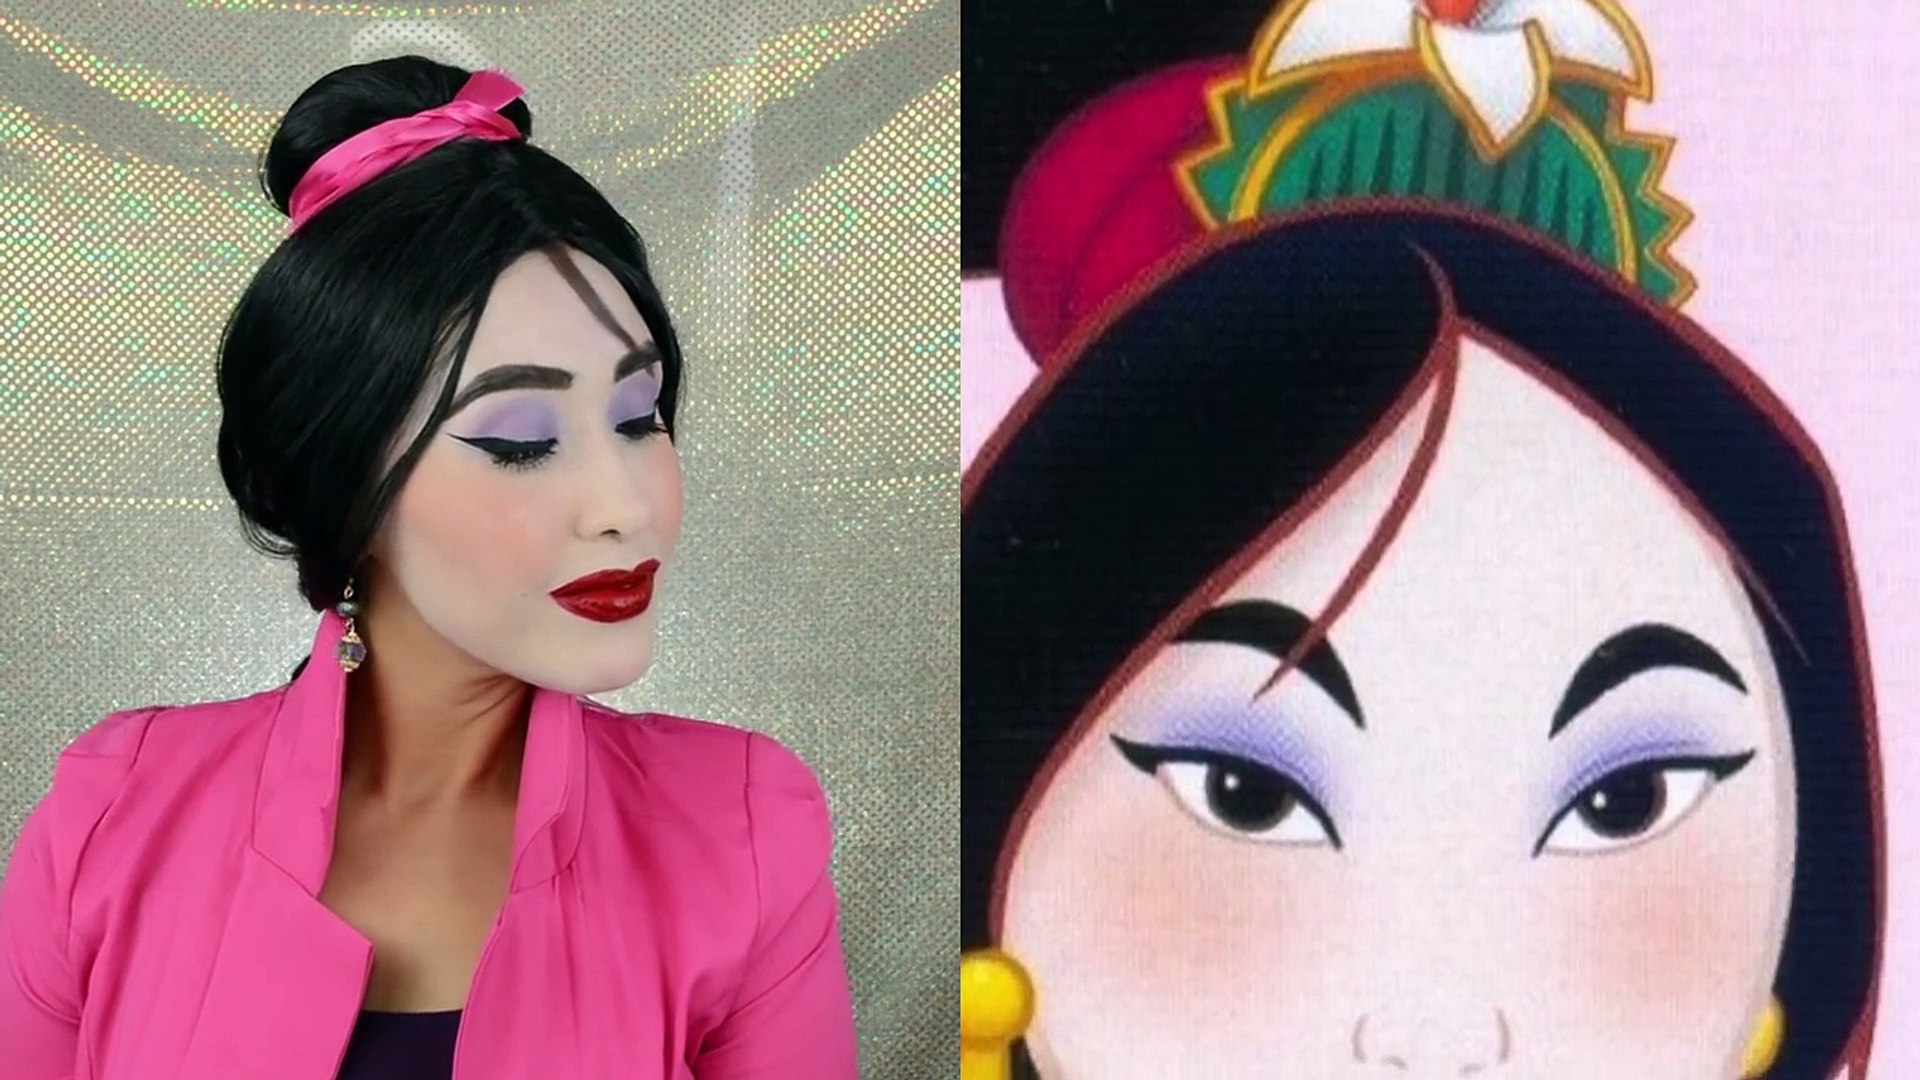 MULAN maquillaje inspirado/ Maquillaje Princesas DISNEY♥ (TodoPorUnSueño) -  Dailymotion Video